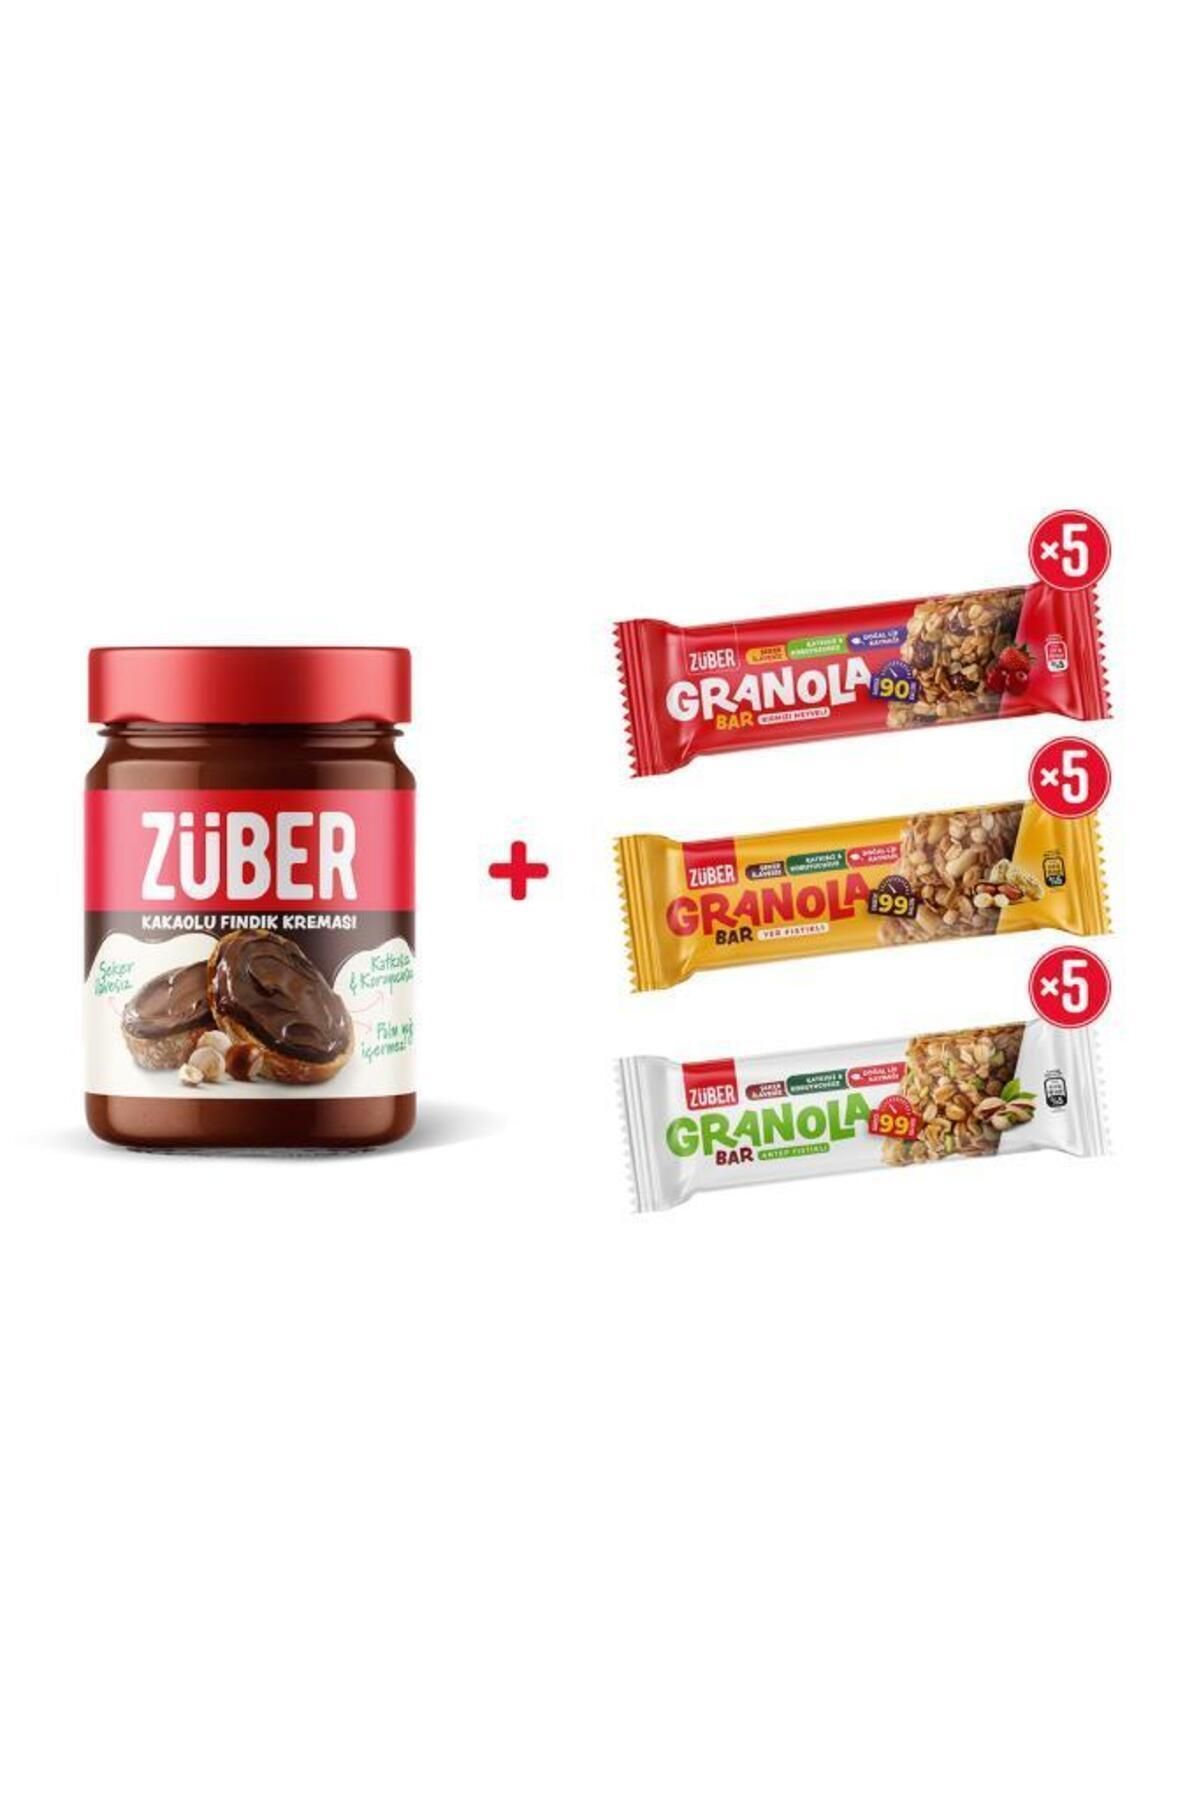 Züber Fındık Kreması Kakaolu + Granola Bar Deneme Paketi